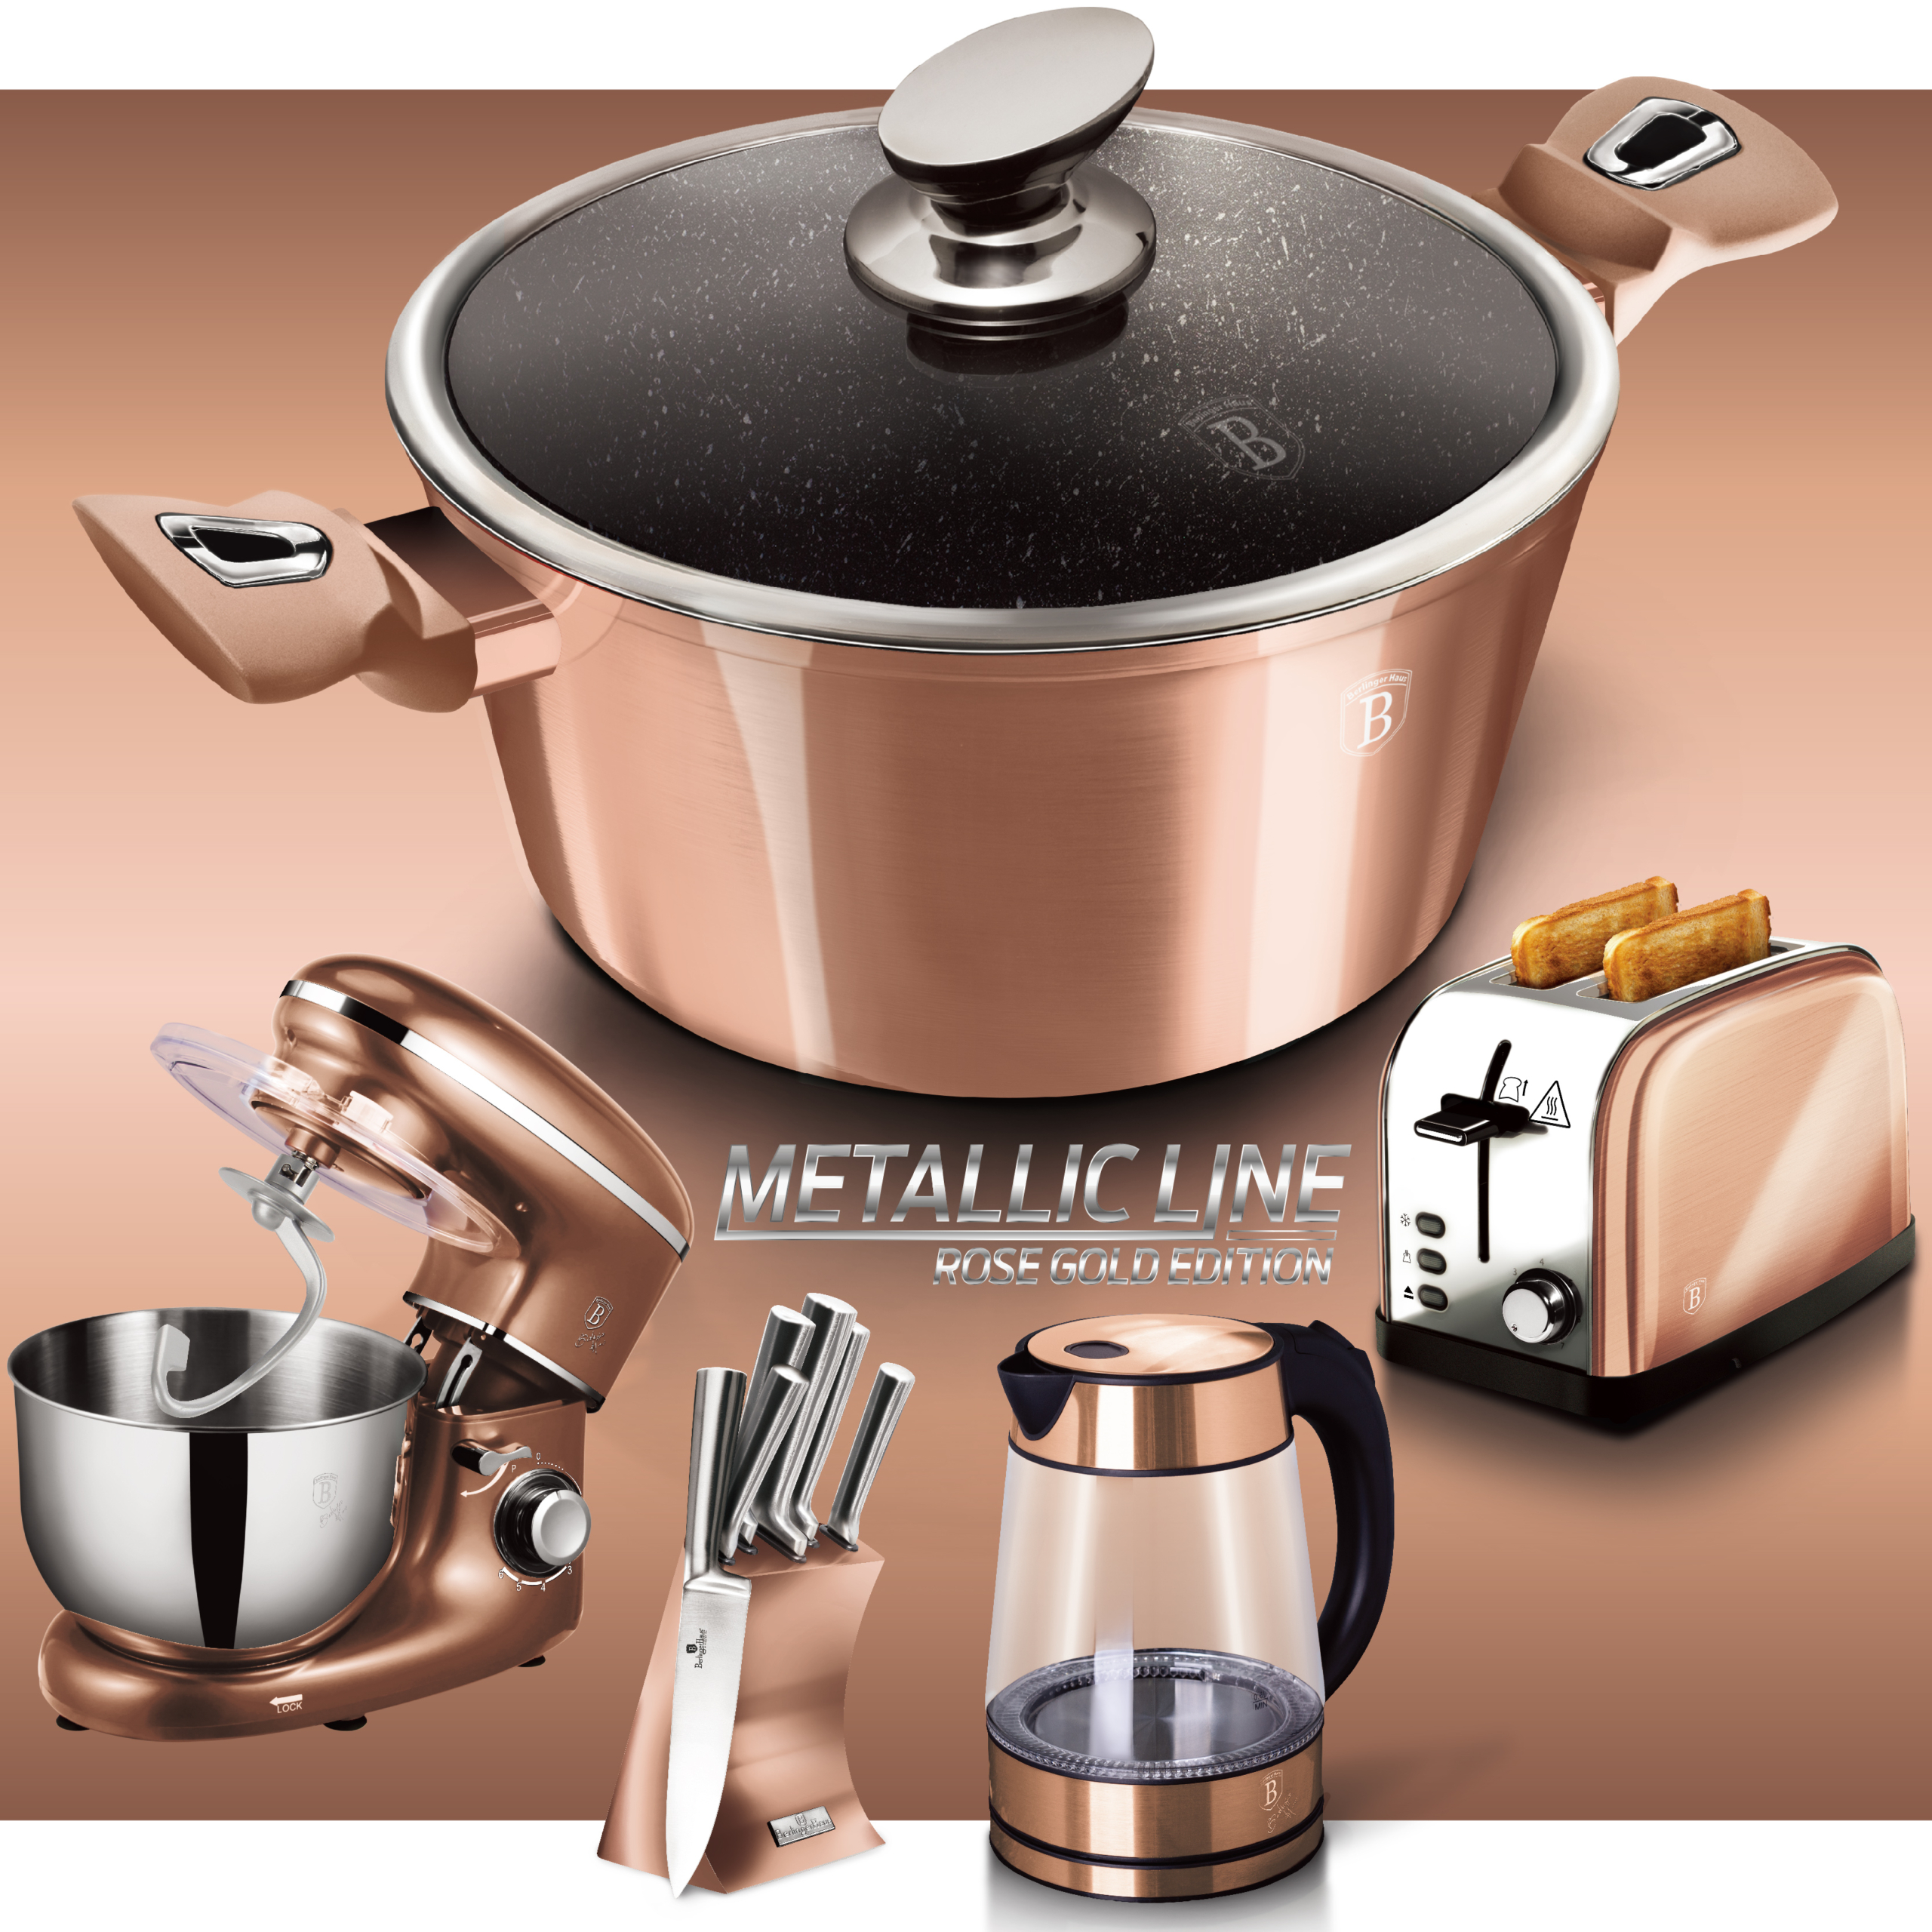 BerlingerHaus Metallic Line Rose Gold Edition termék család oldal a főbb konyhai termékekkel